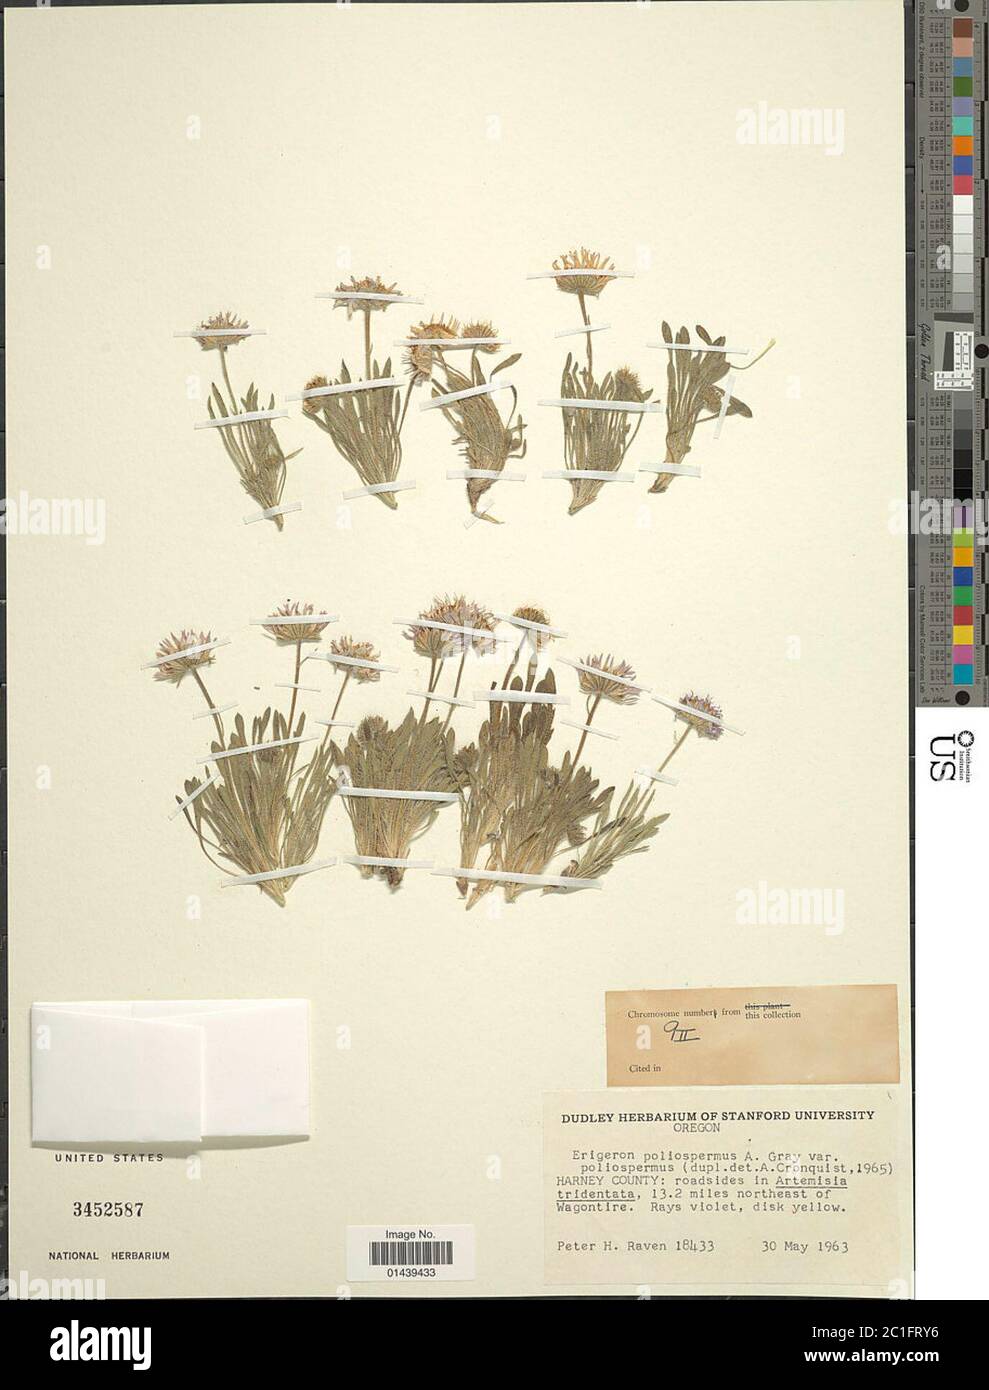 Erigeron poliospermus A Gray Erigeron poliospermus A Gray. Stock Photo